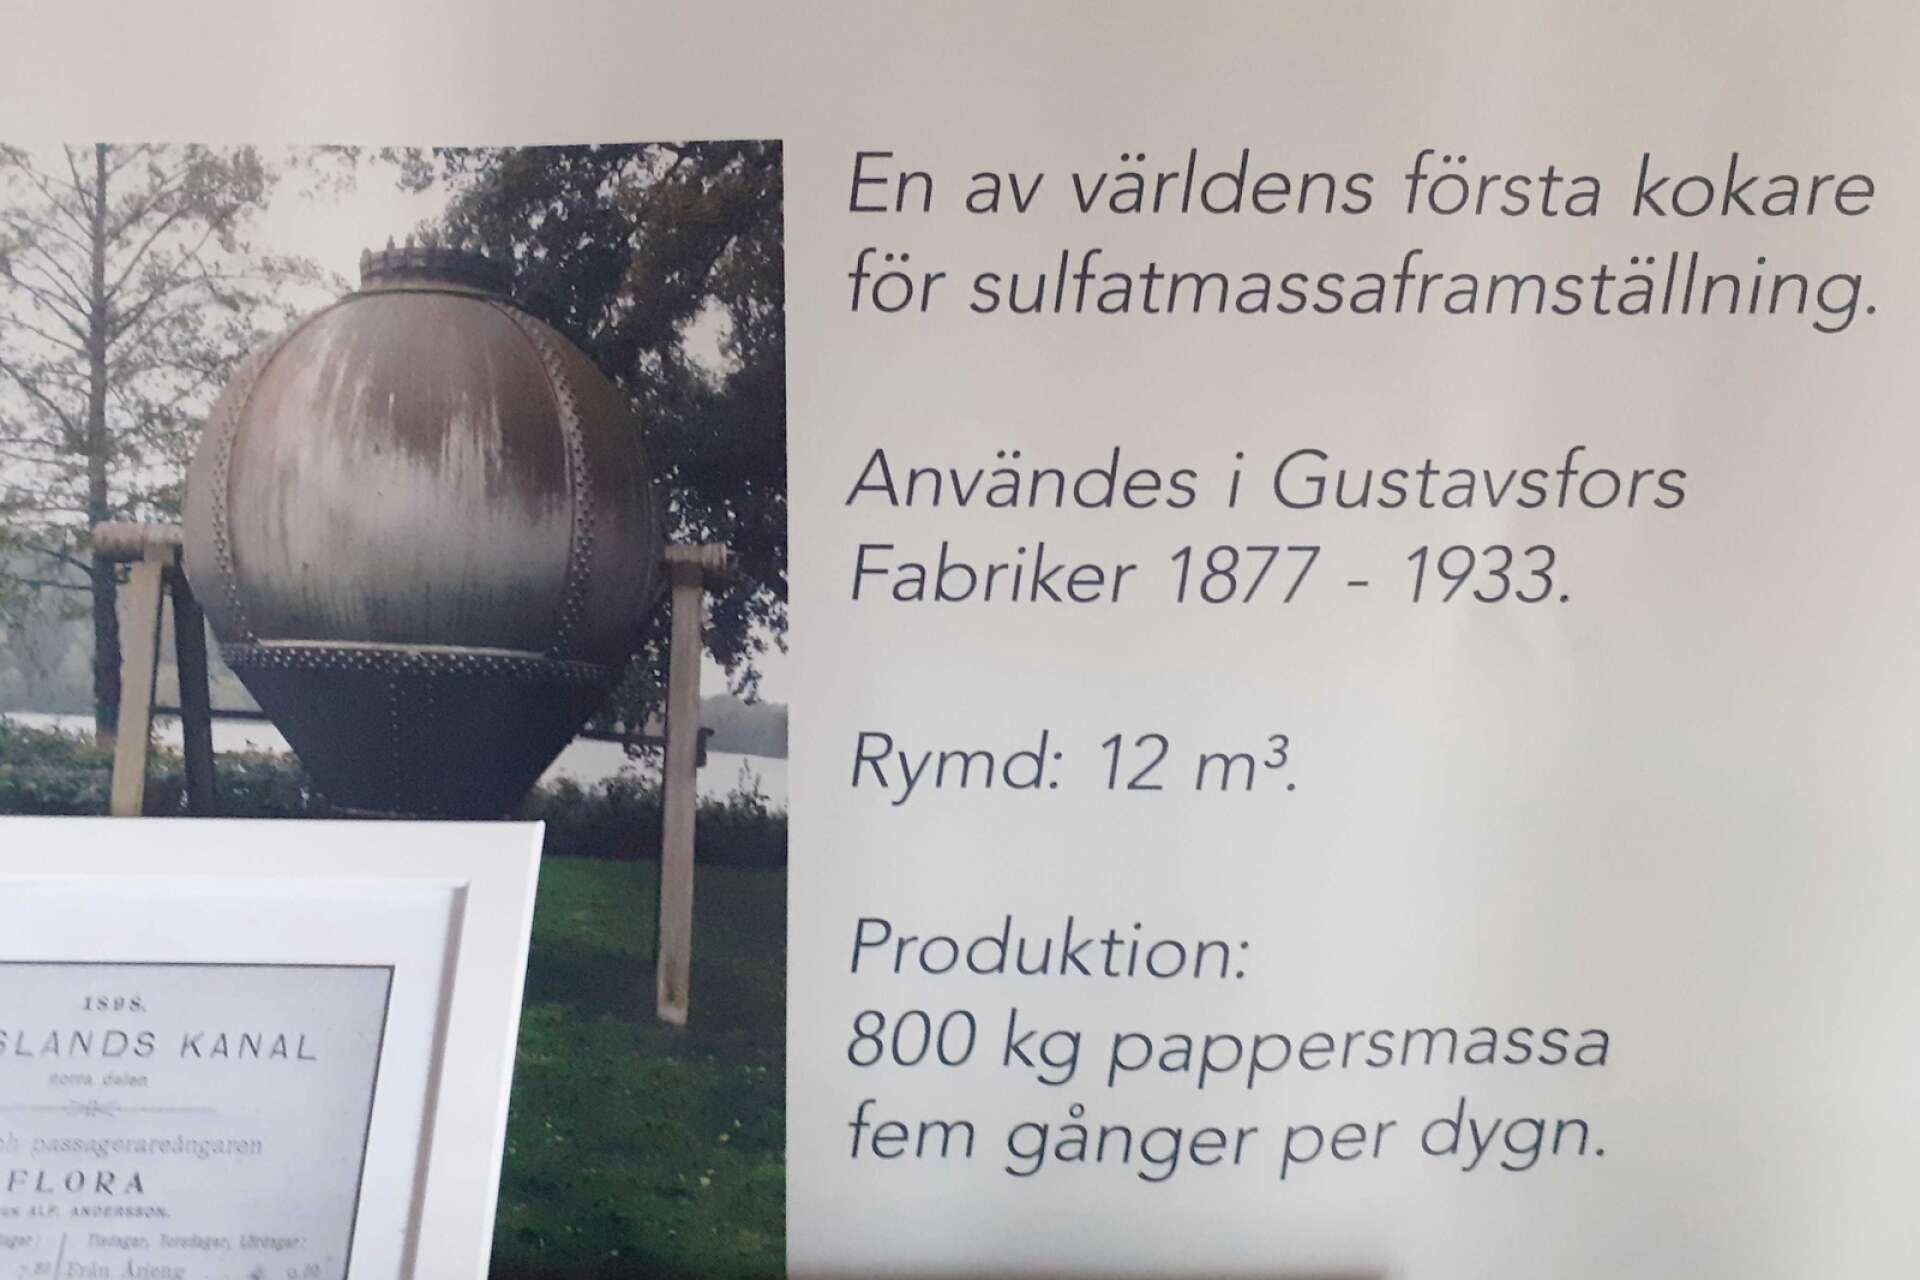 Inne i bruksmuseet kan man läsa om sulfatmassatillverkningen i Gustavsfors och där finns bild på den unika kokaren.